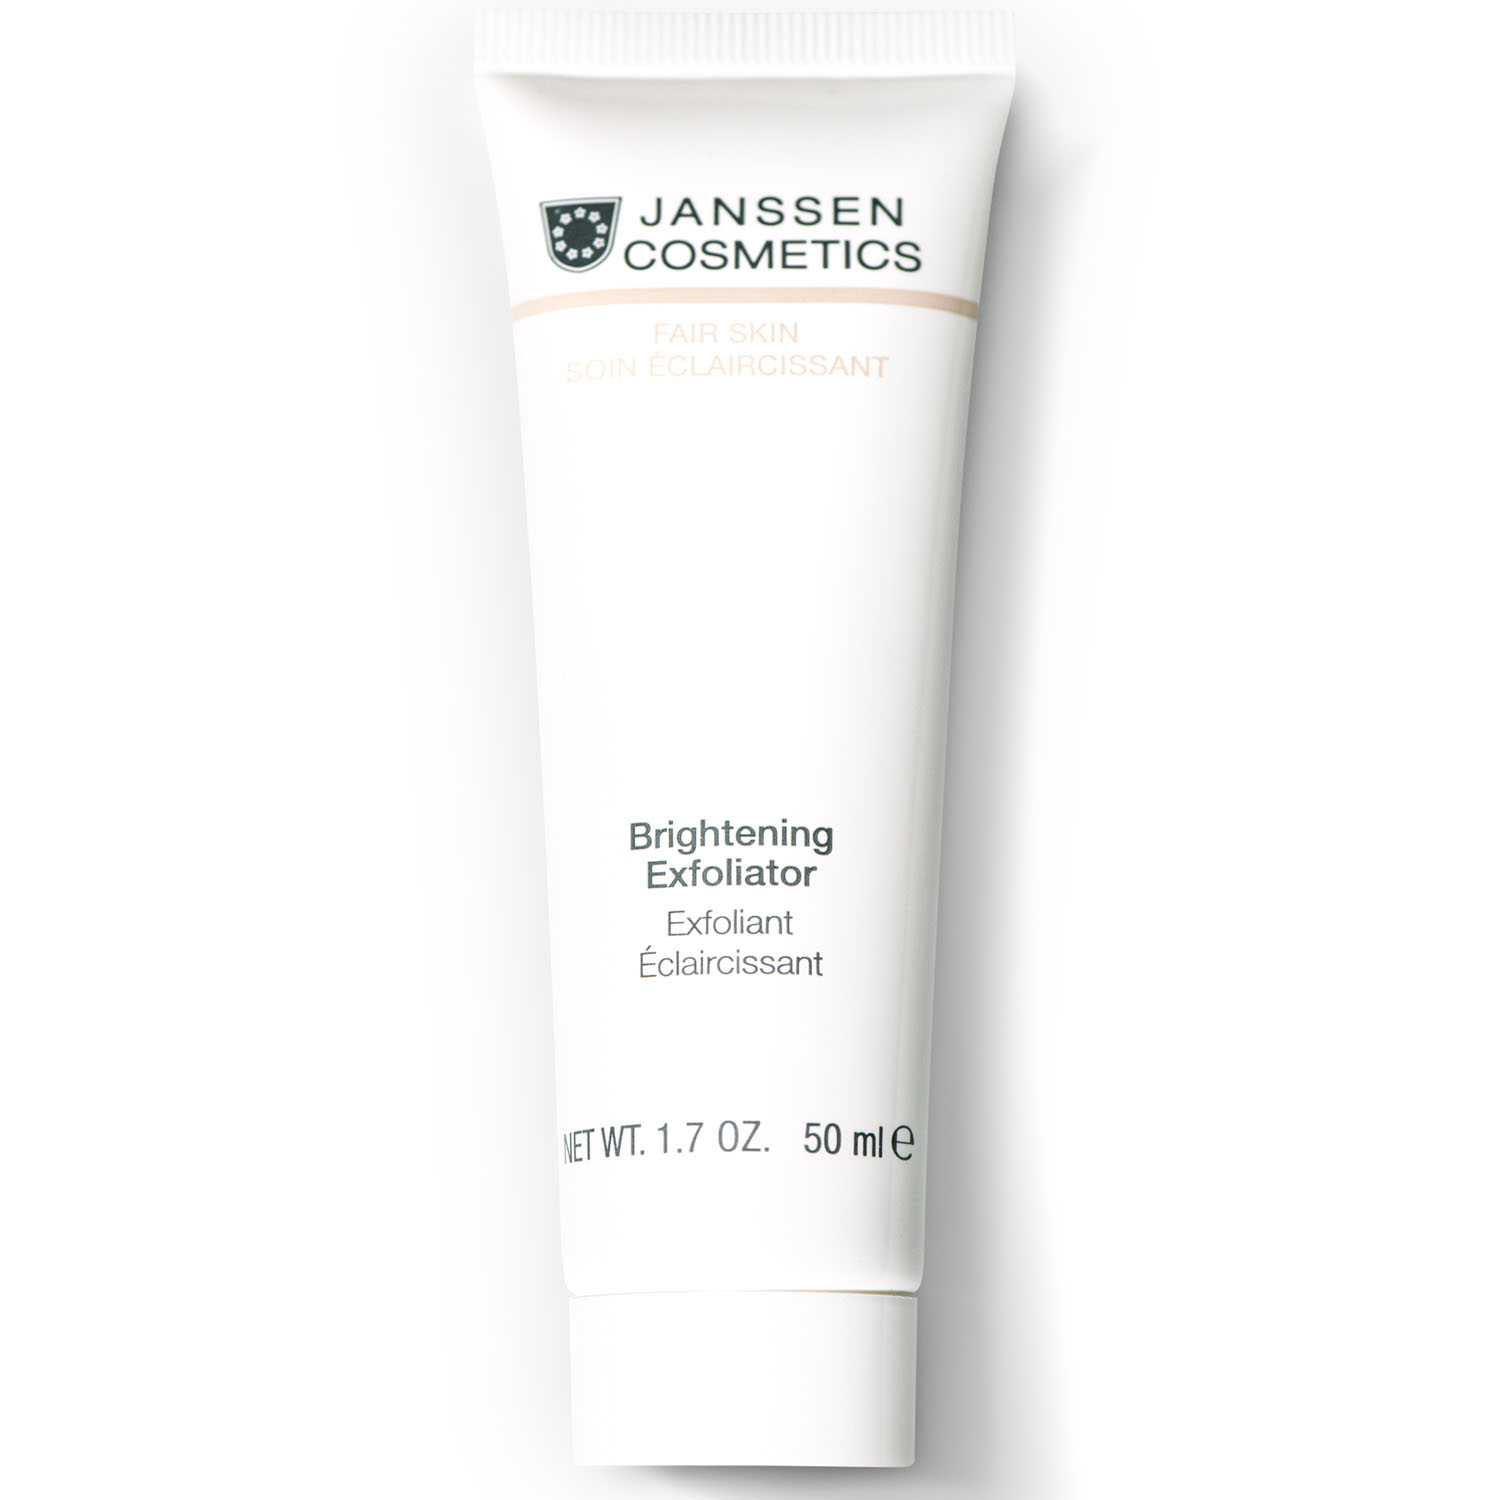 цена Janssen Cosmetics Пилинг-крем для выравнивания цвета лица Brightening Exfoliator, 50 мл (Janssen Cosmetics, Fair Skin)